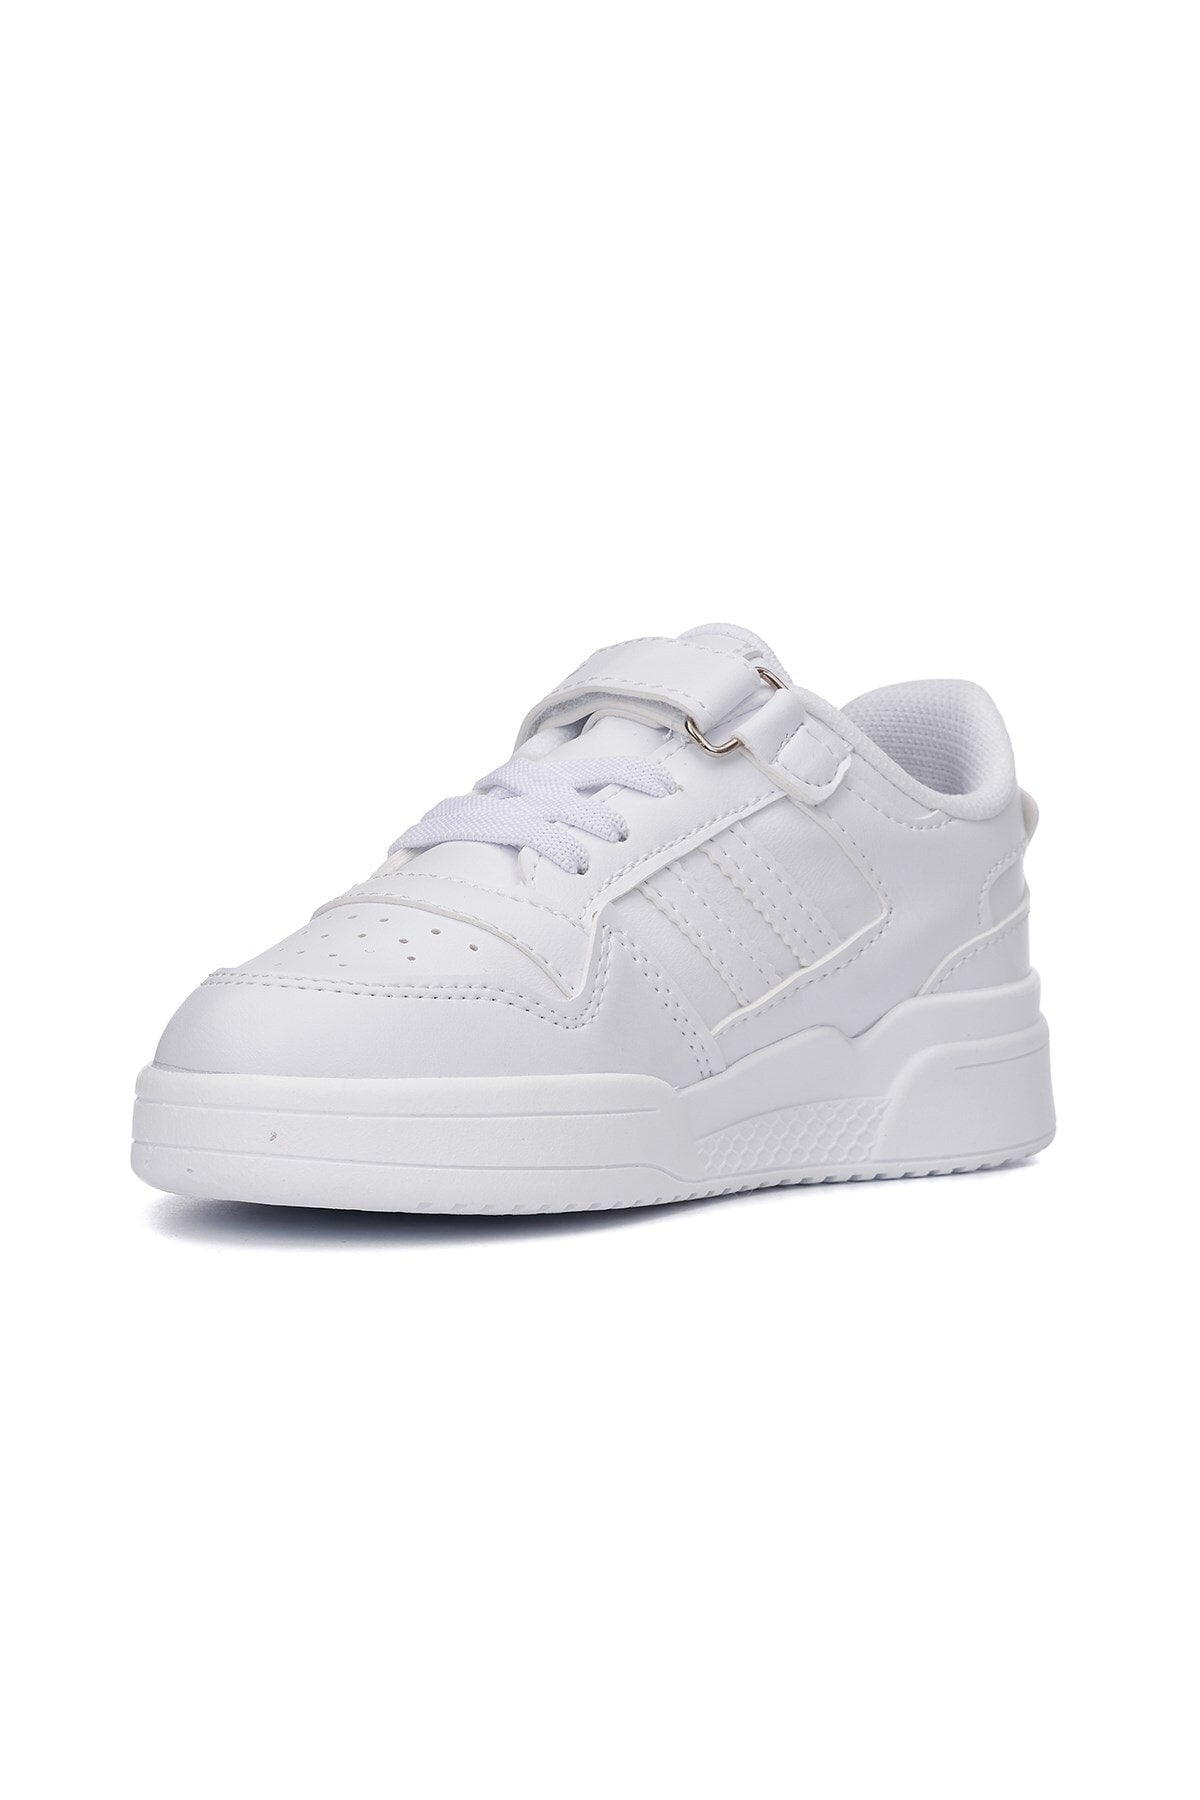 Beyaz - Günlük Unisex Çocuk Sneaker Bağcıklı Ve Cırtlı Hafif Kaymaz Taban Rahat Spor Ayakkabı 100